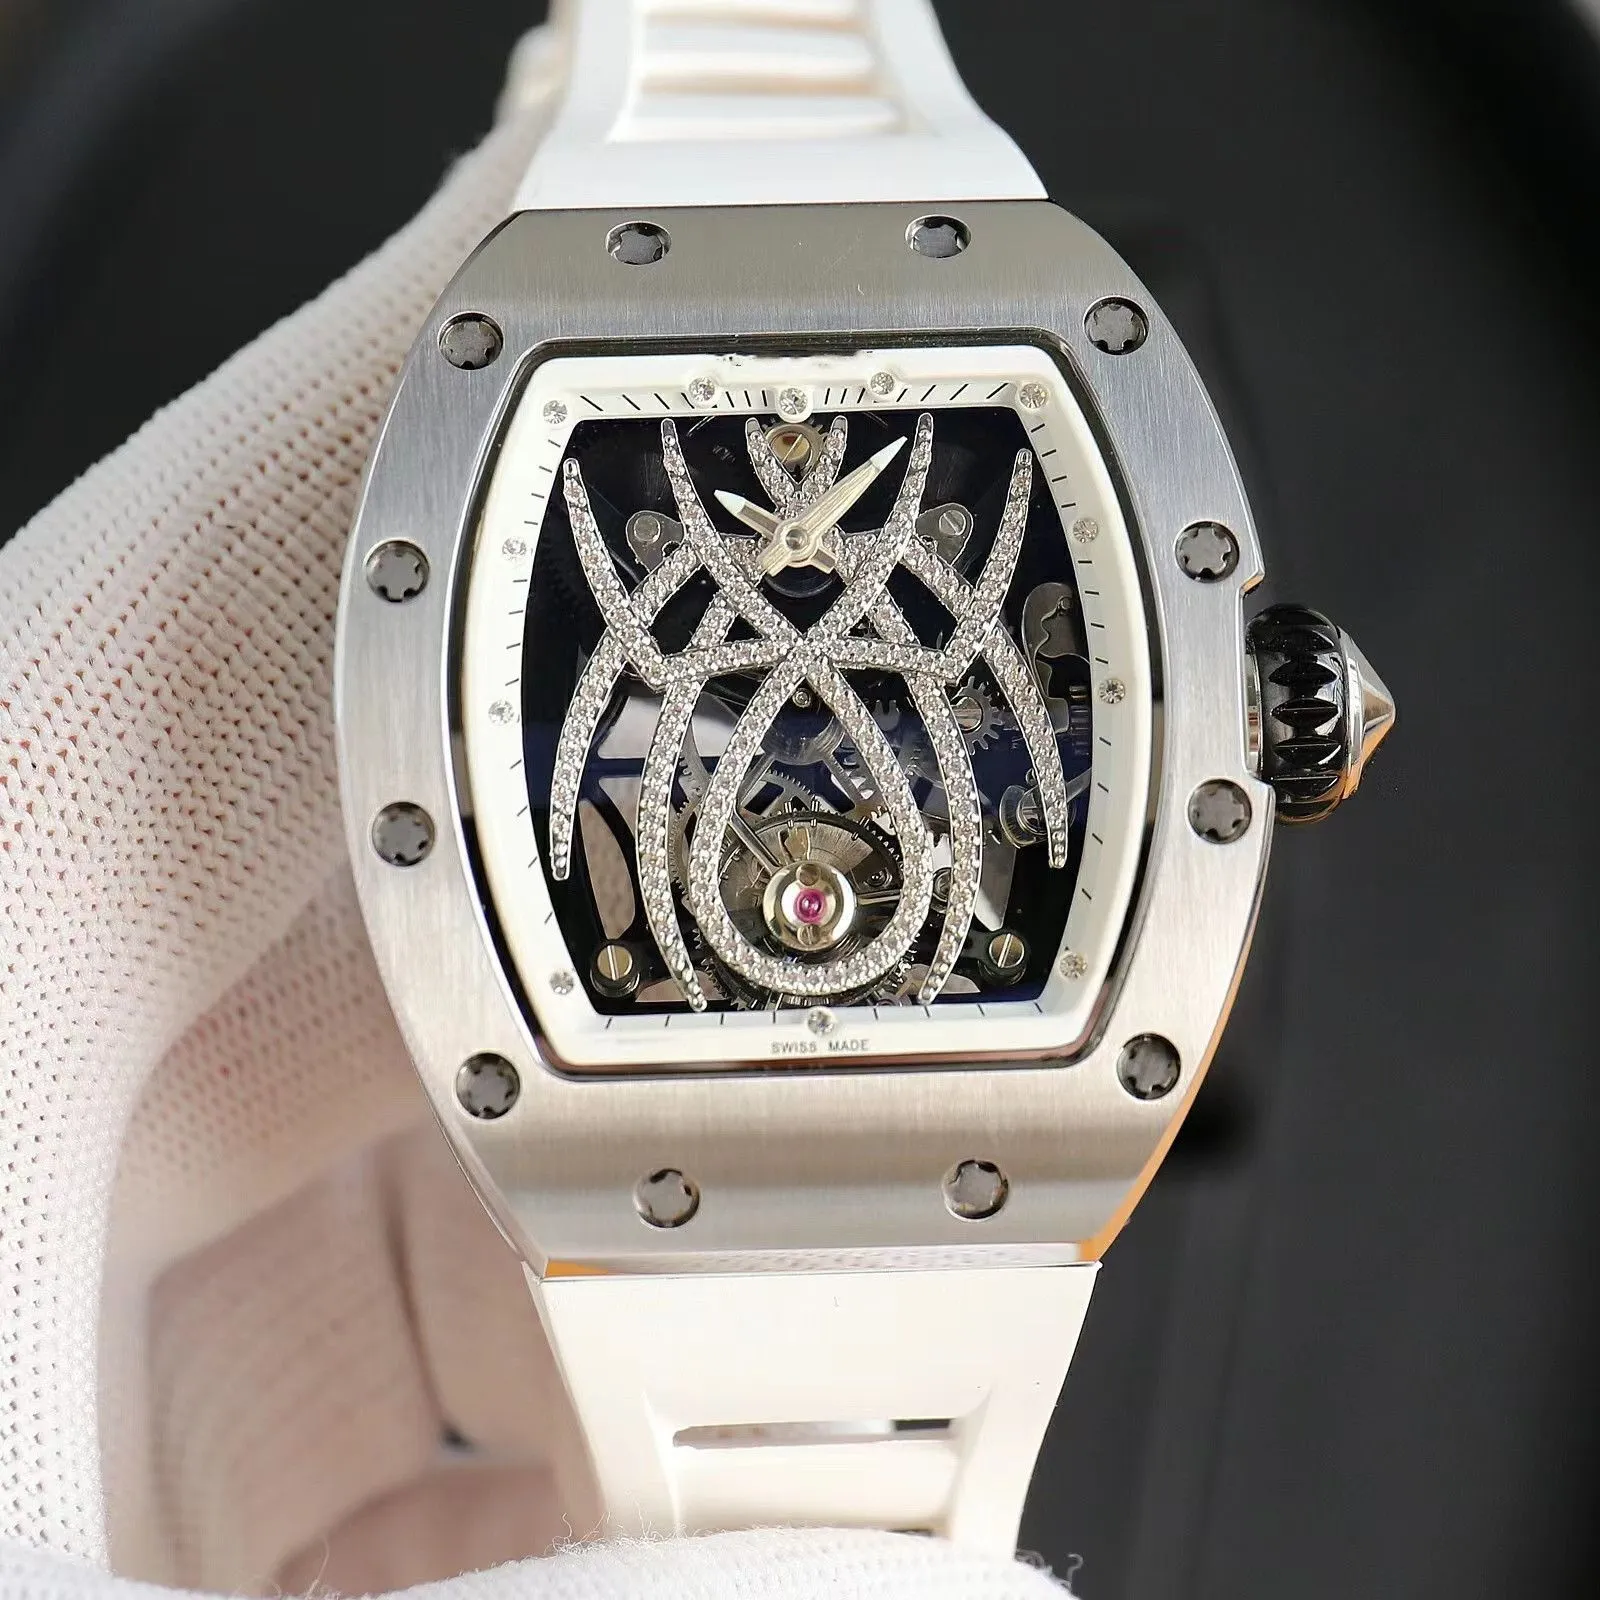 L'orologio RM19-01 è dotato di una sospensione di movimento meccanico Spider Sospensione a zaffiro vuoto